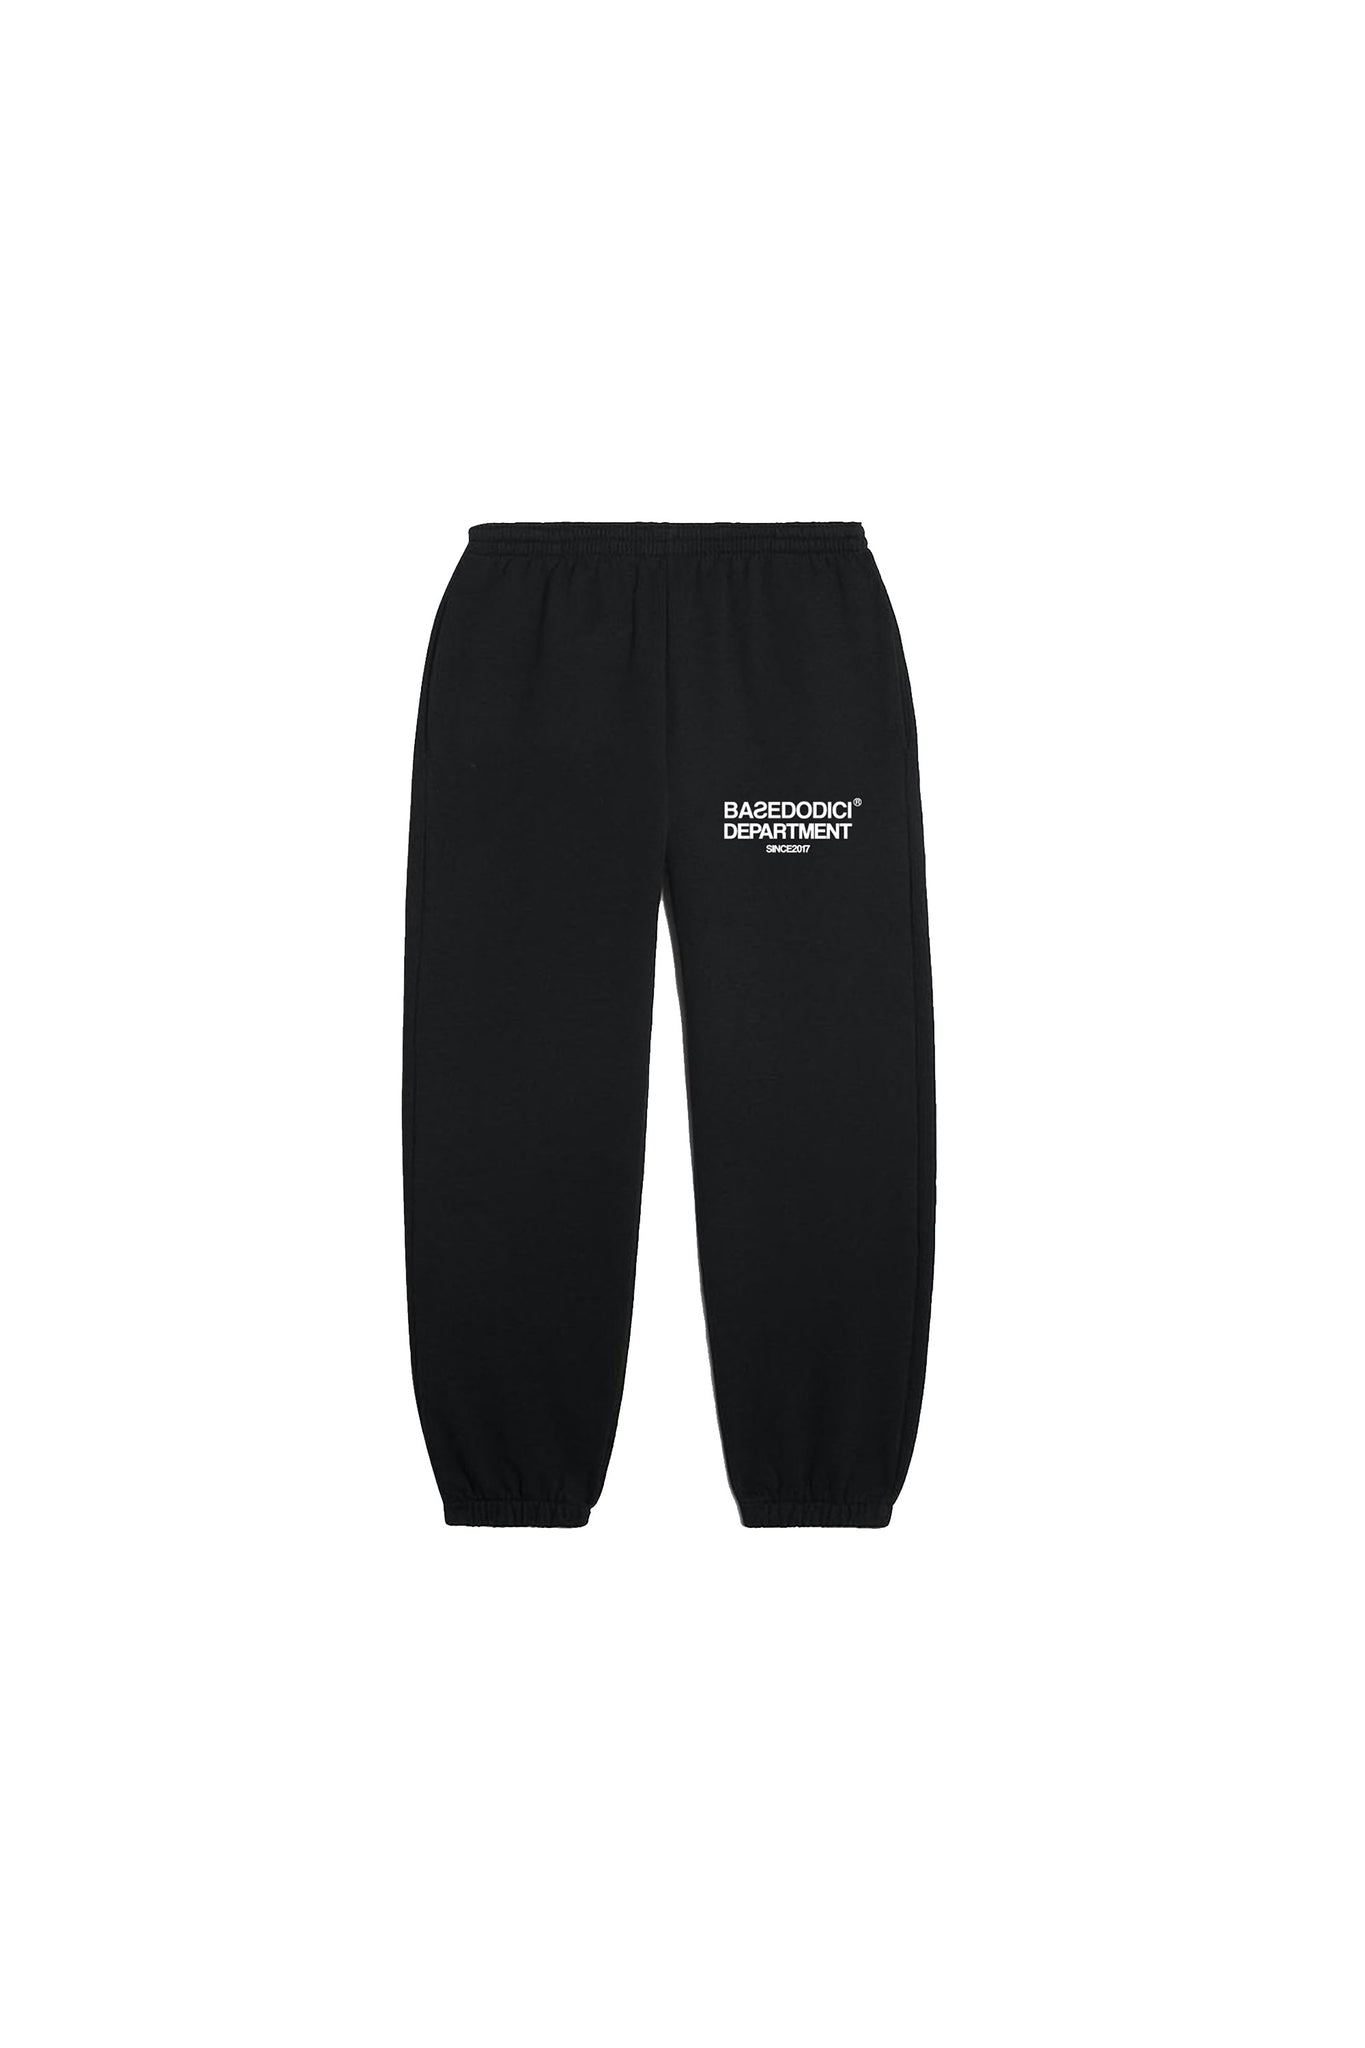 Fleece Pants “BADINFLUENCE” Black